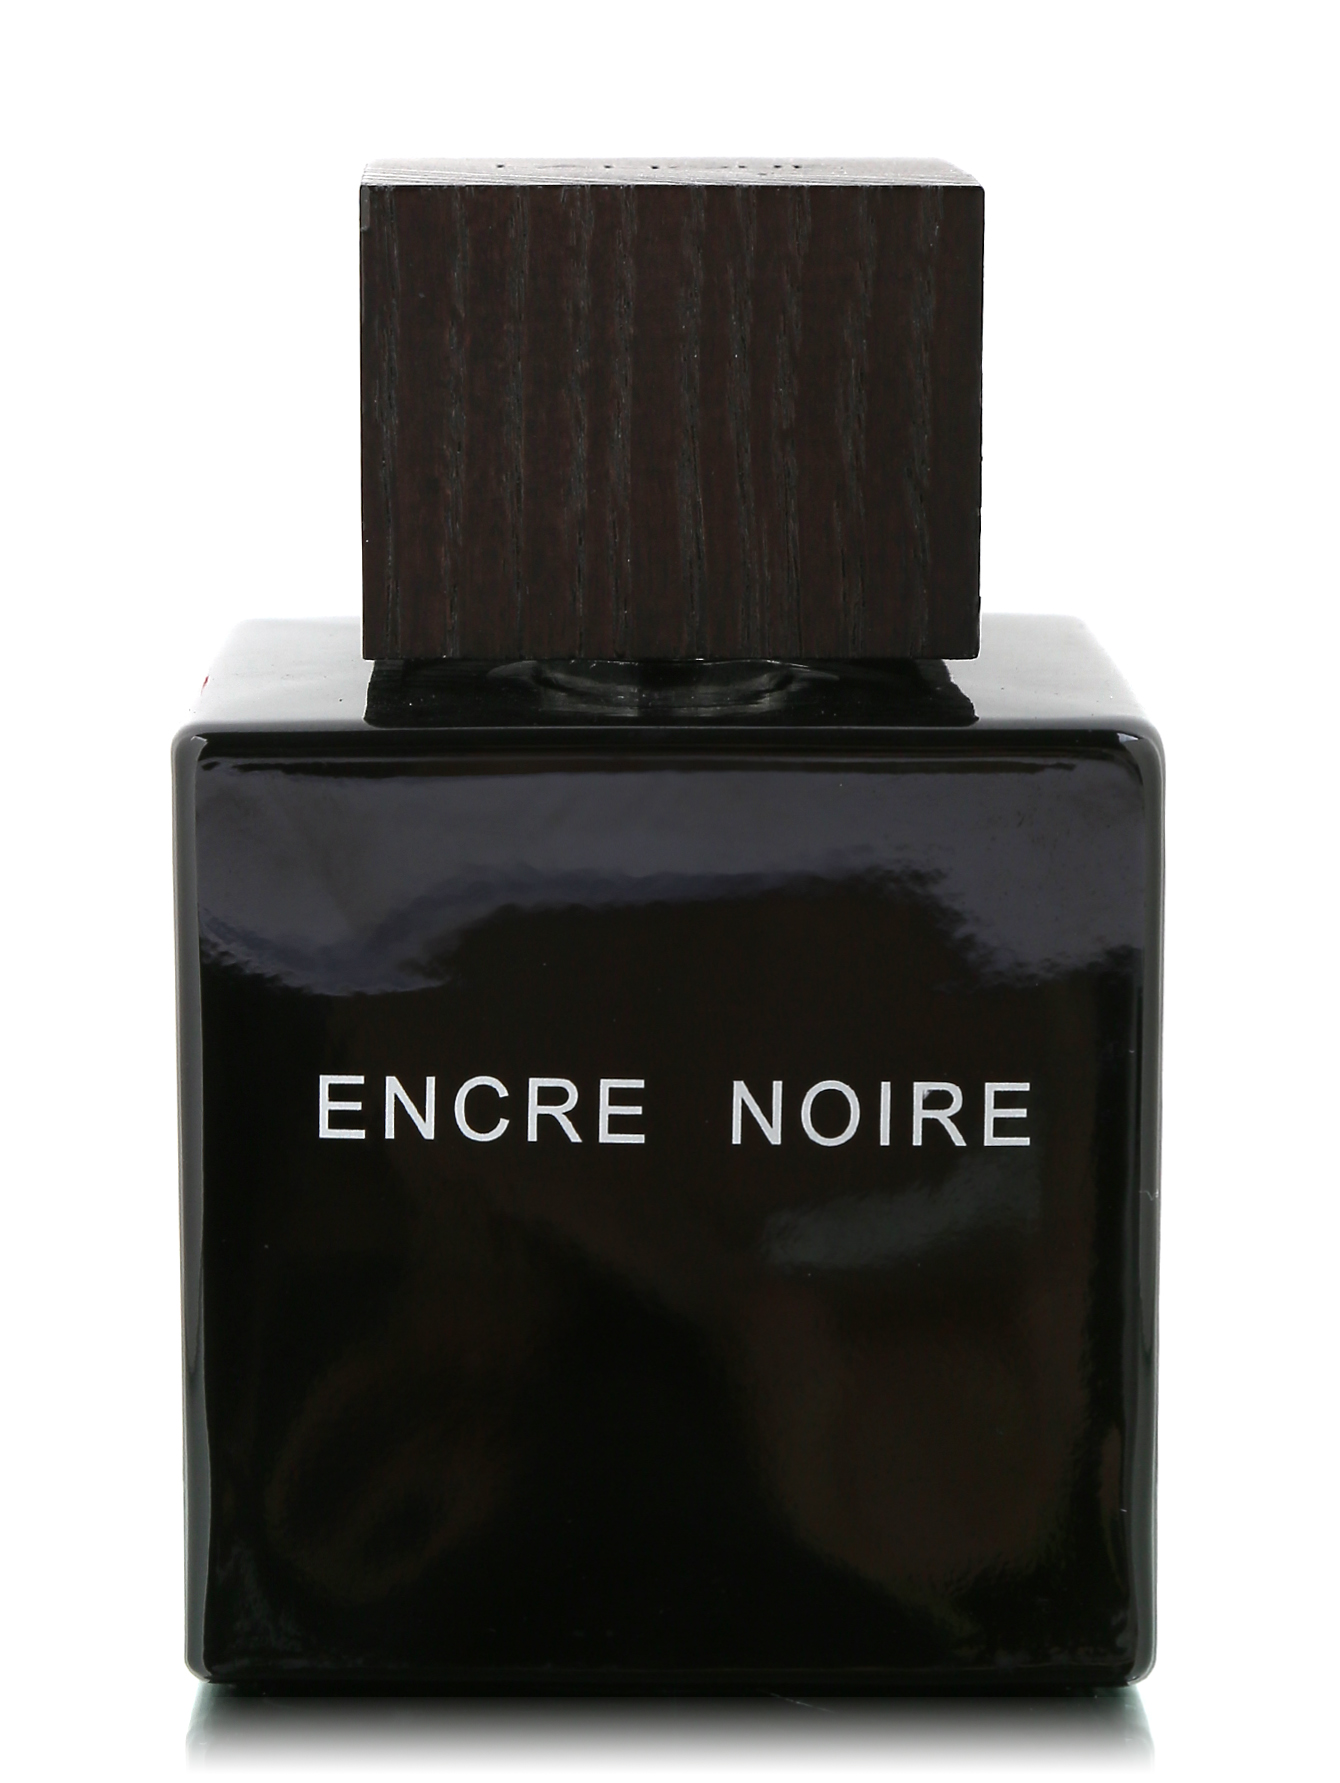 Noir мужской парфюм. Духи Лалик encre noire. Encre noire духи мужские. Туалетная вода Lalique encre noire. Духи Lalique encre noire.